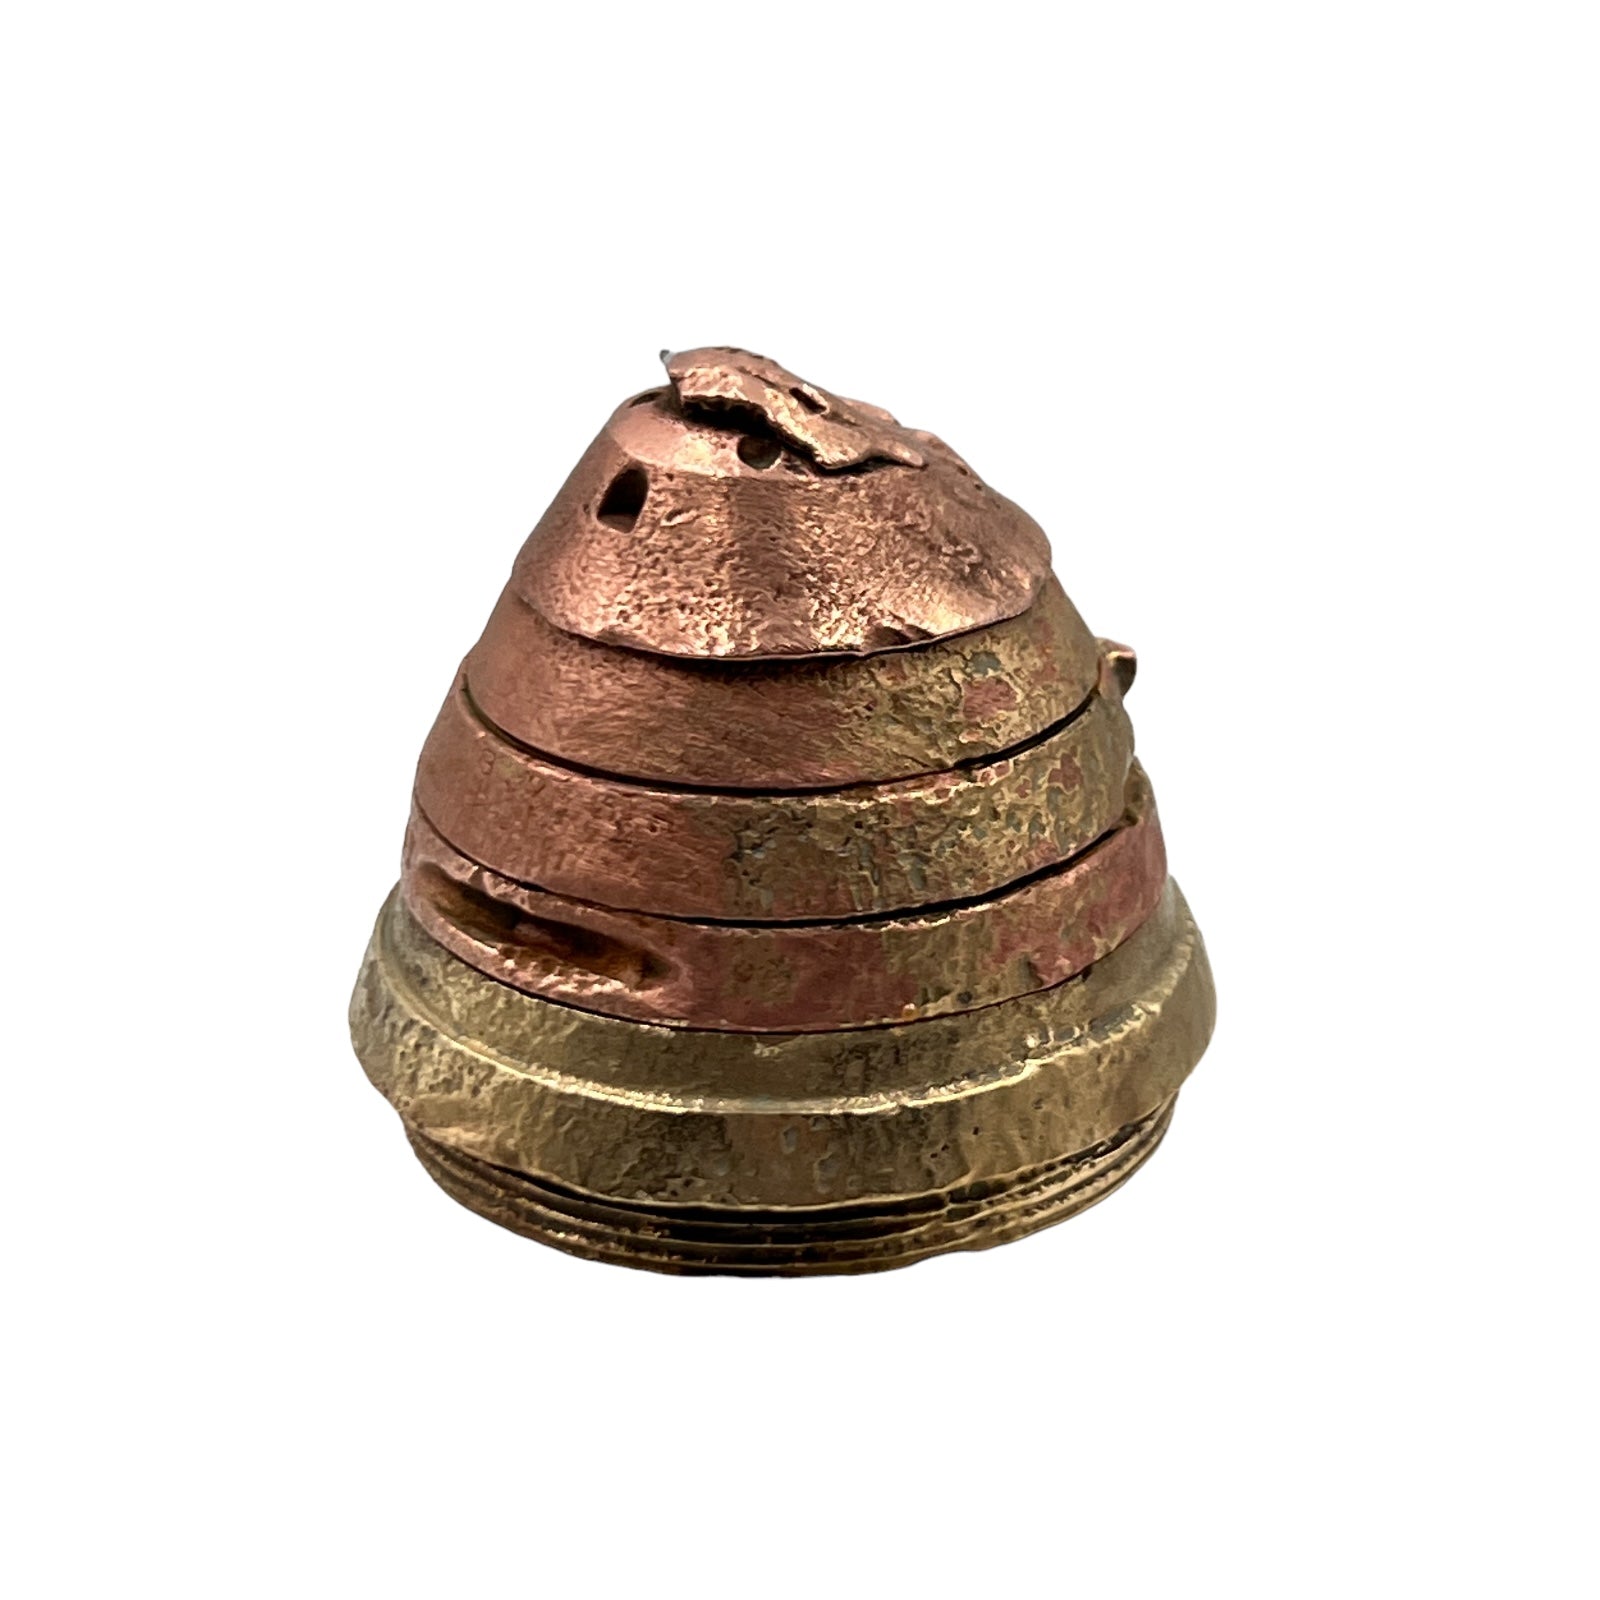 WW1 militaria relic memorabilia brass fuse